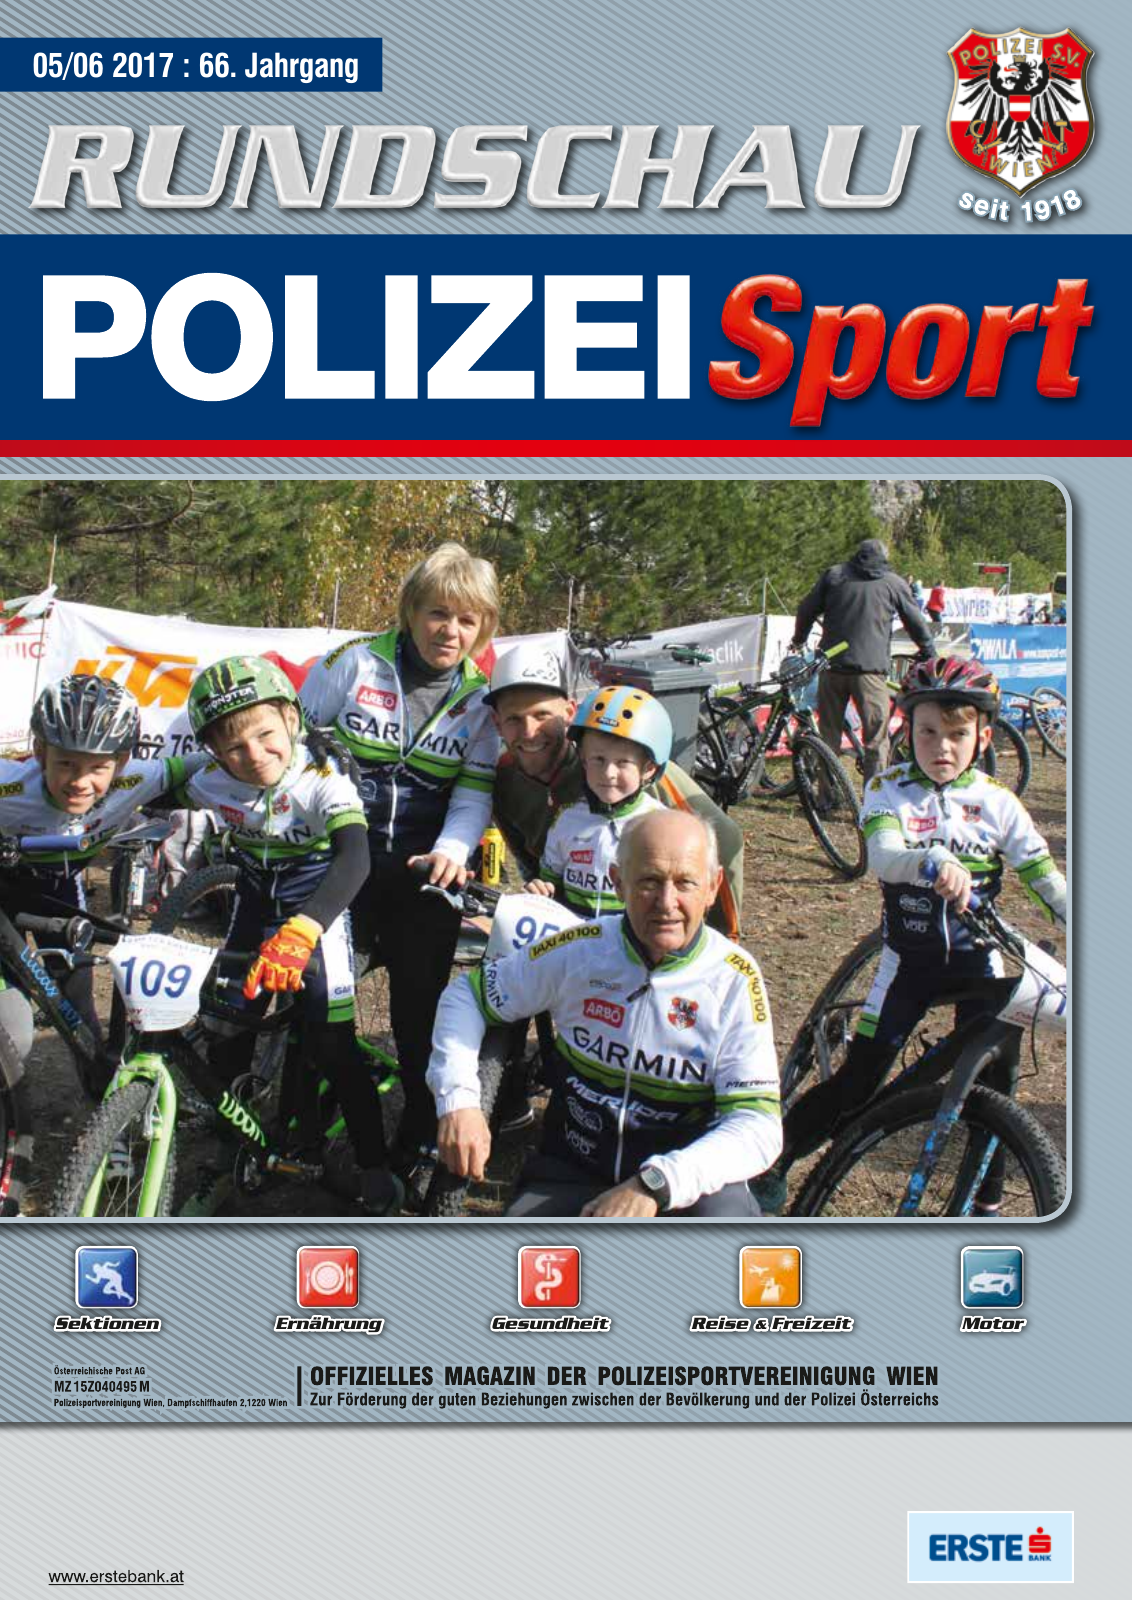 Vorschau Rundschau Polizei Sport 05-06/2017 Seite 1